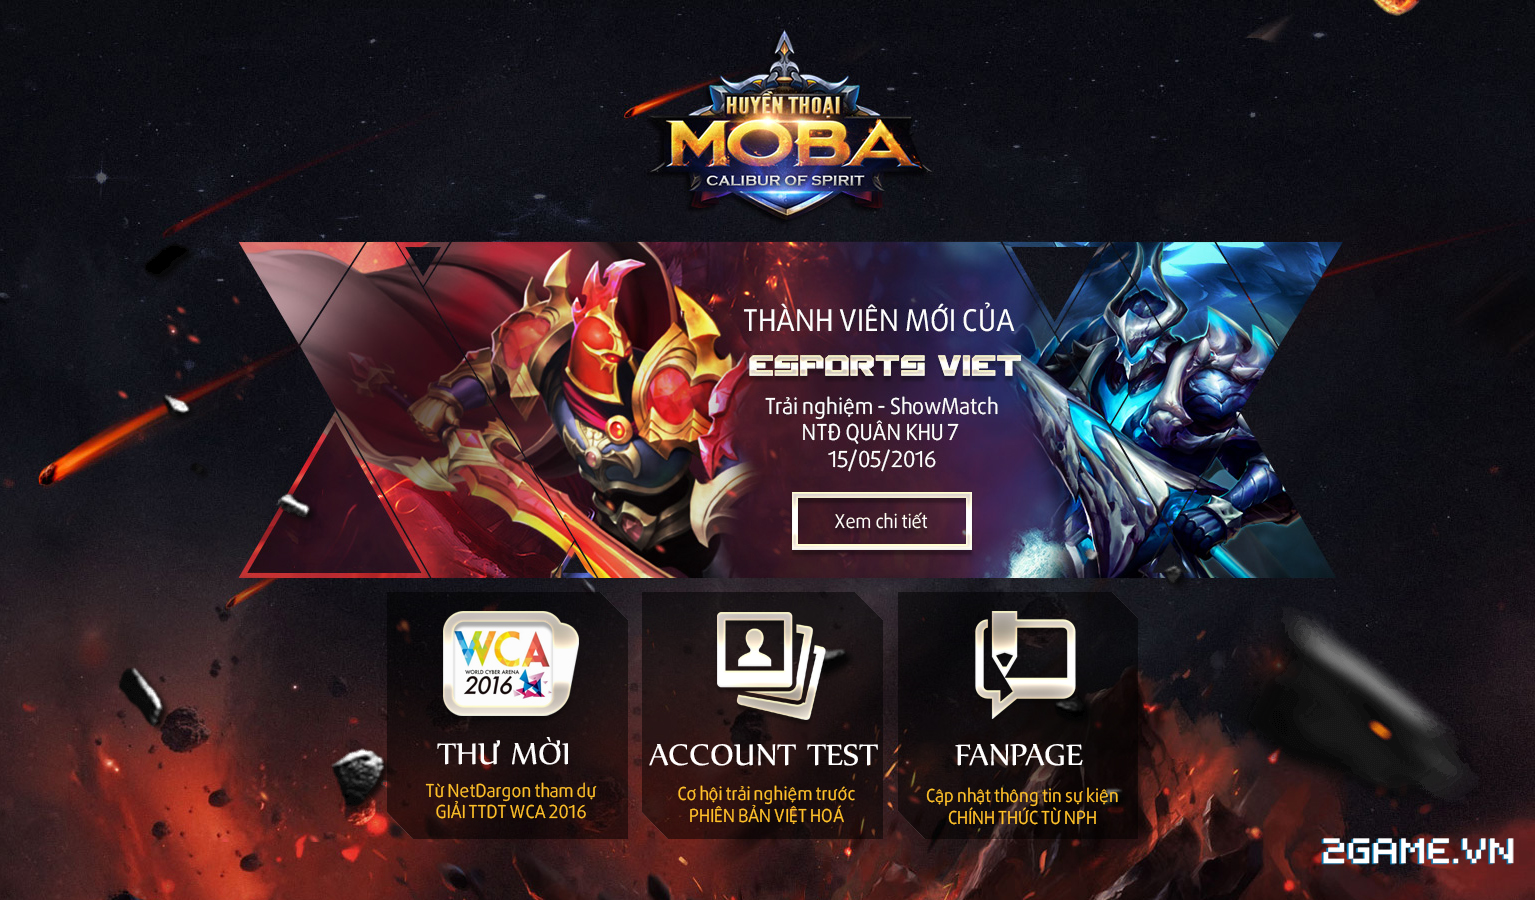 Huyền Thoại MOBA – Thành viên mới của eSports Việt